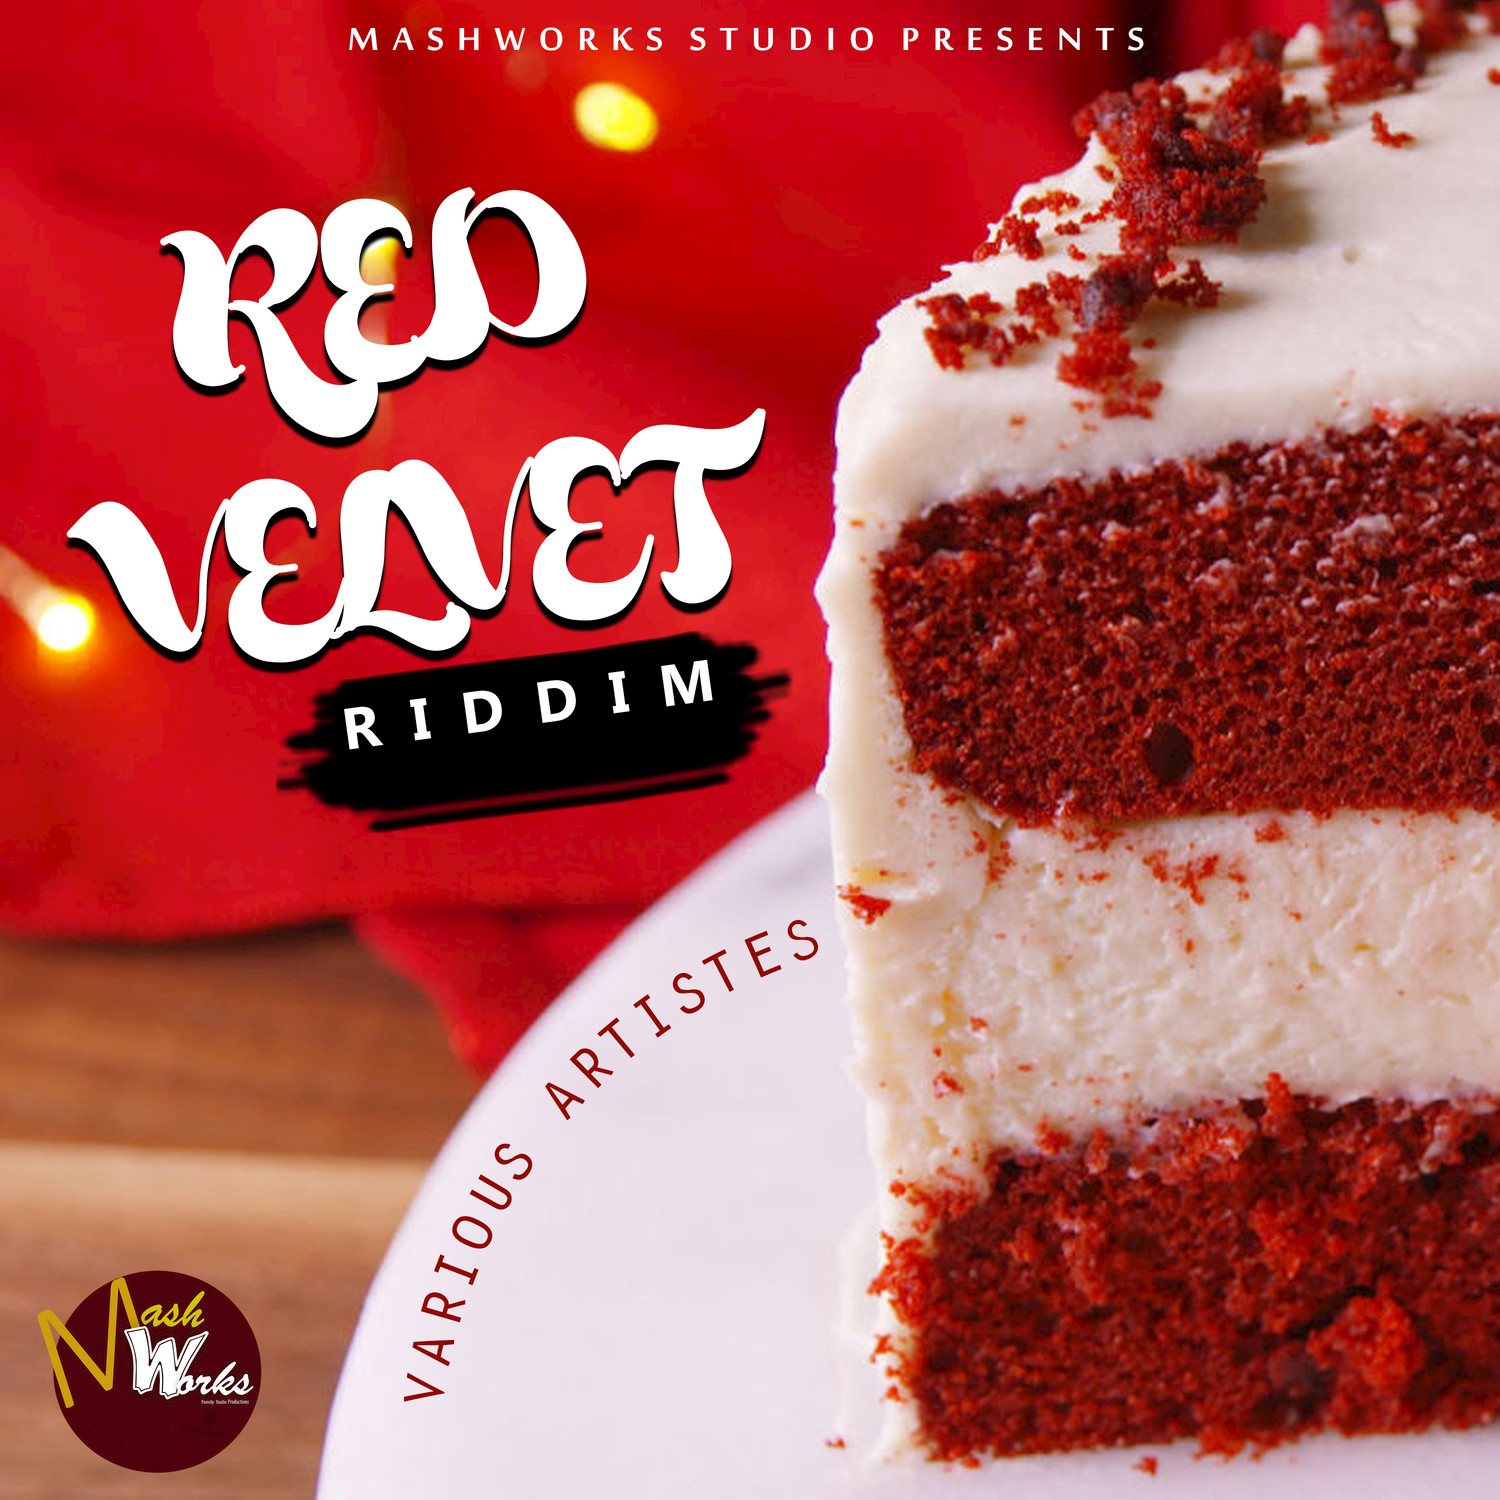 Red Velvet Riddim